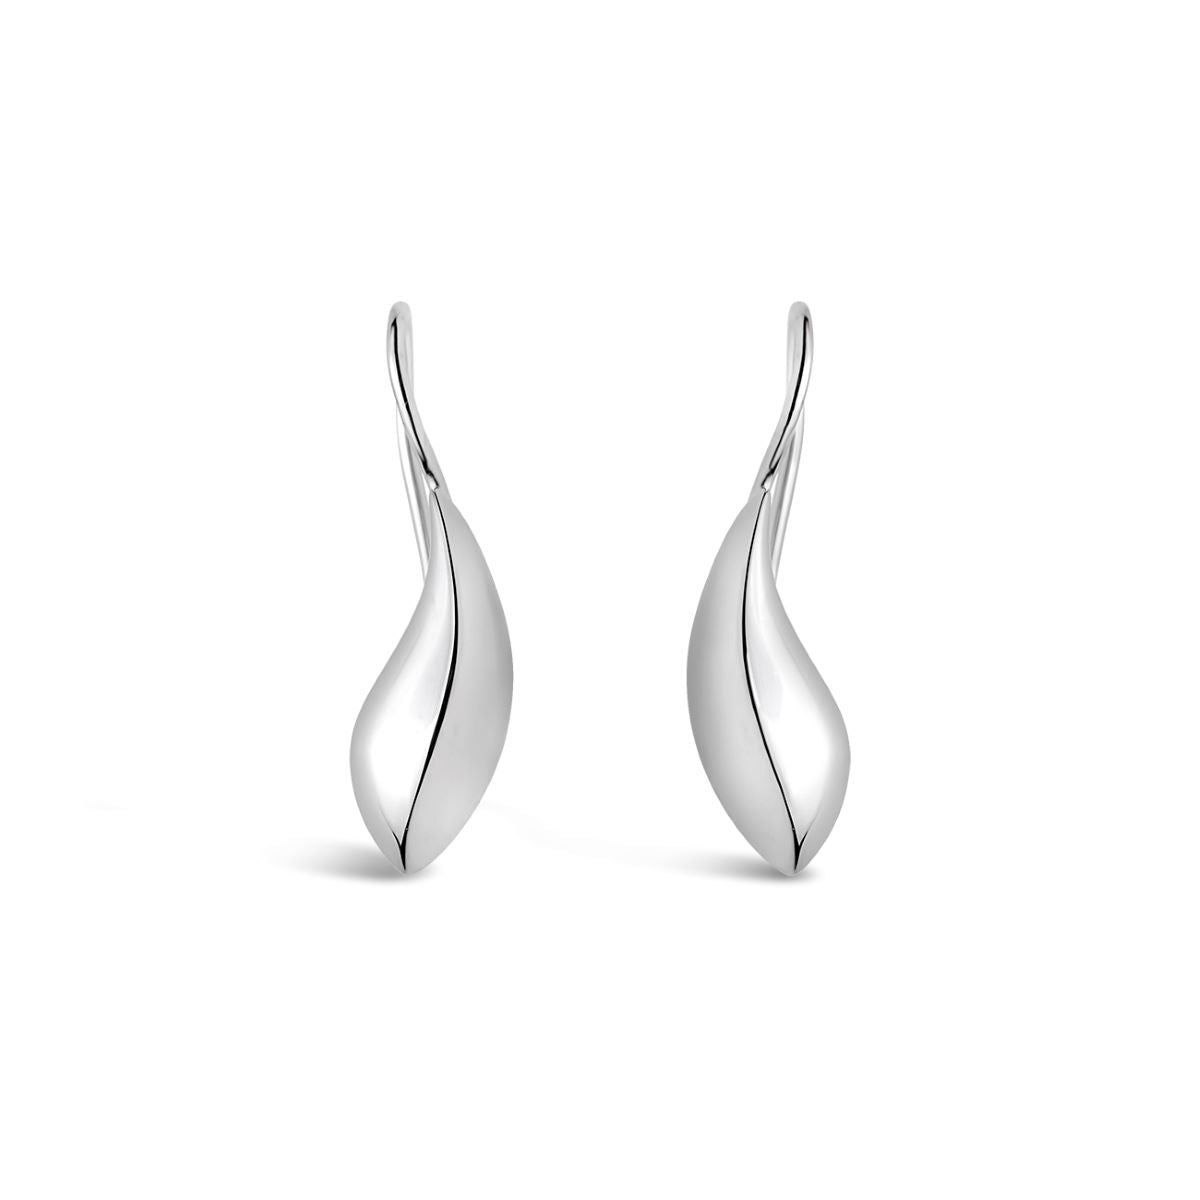 Daniel bentley Voyager silver hook earrings